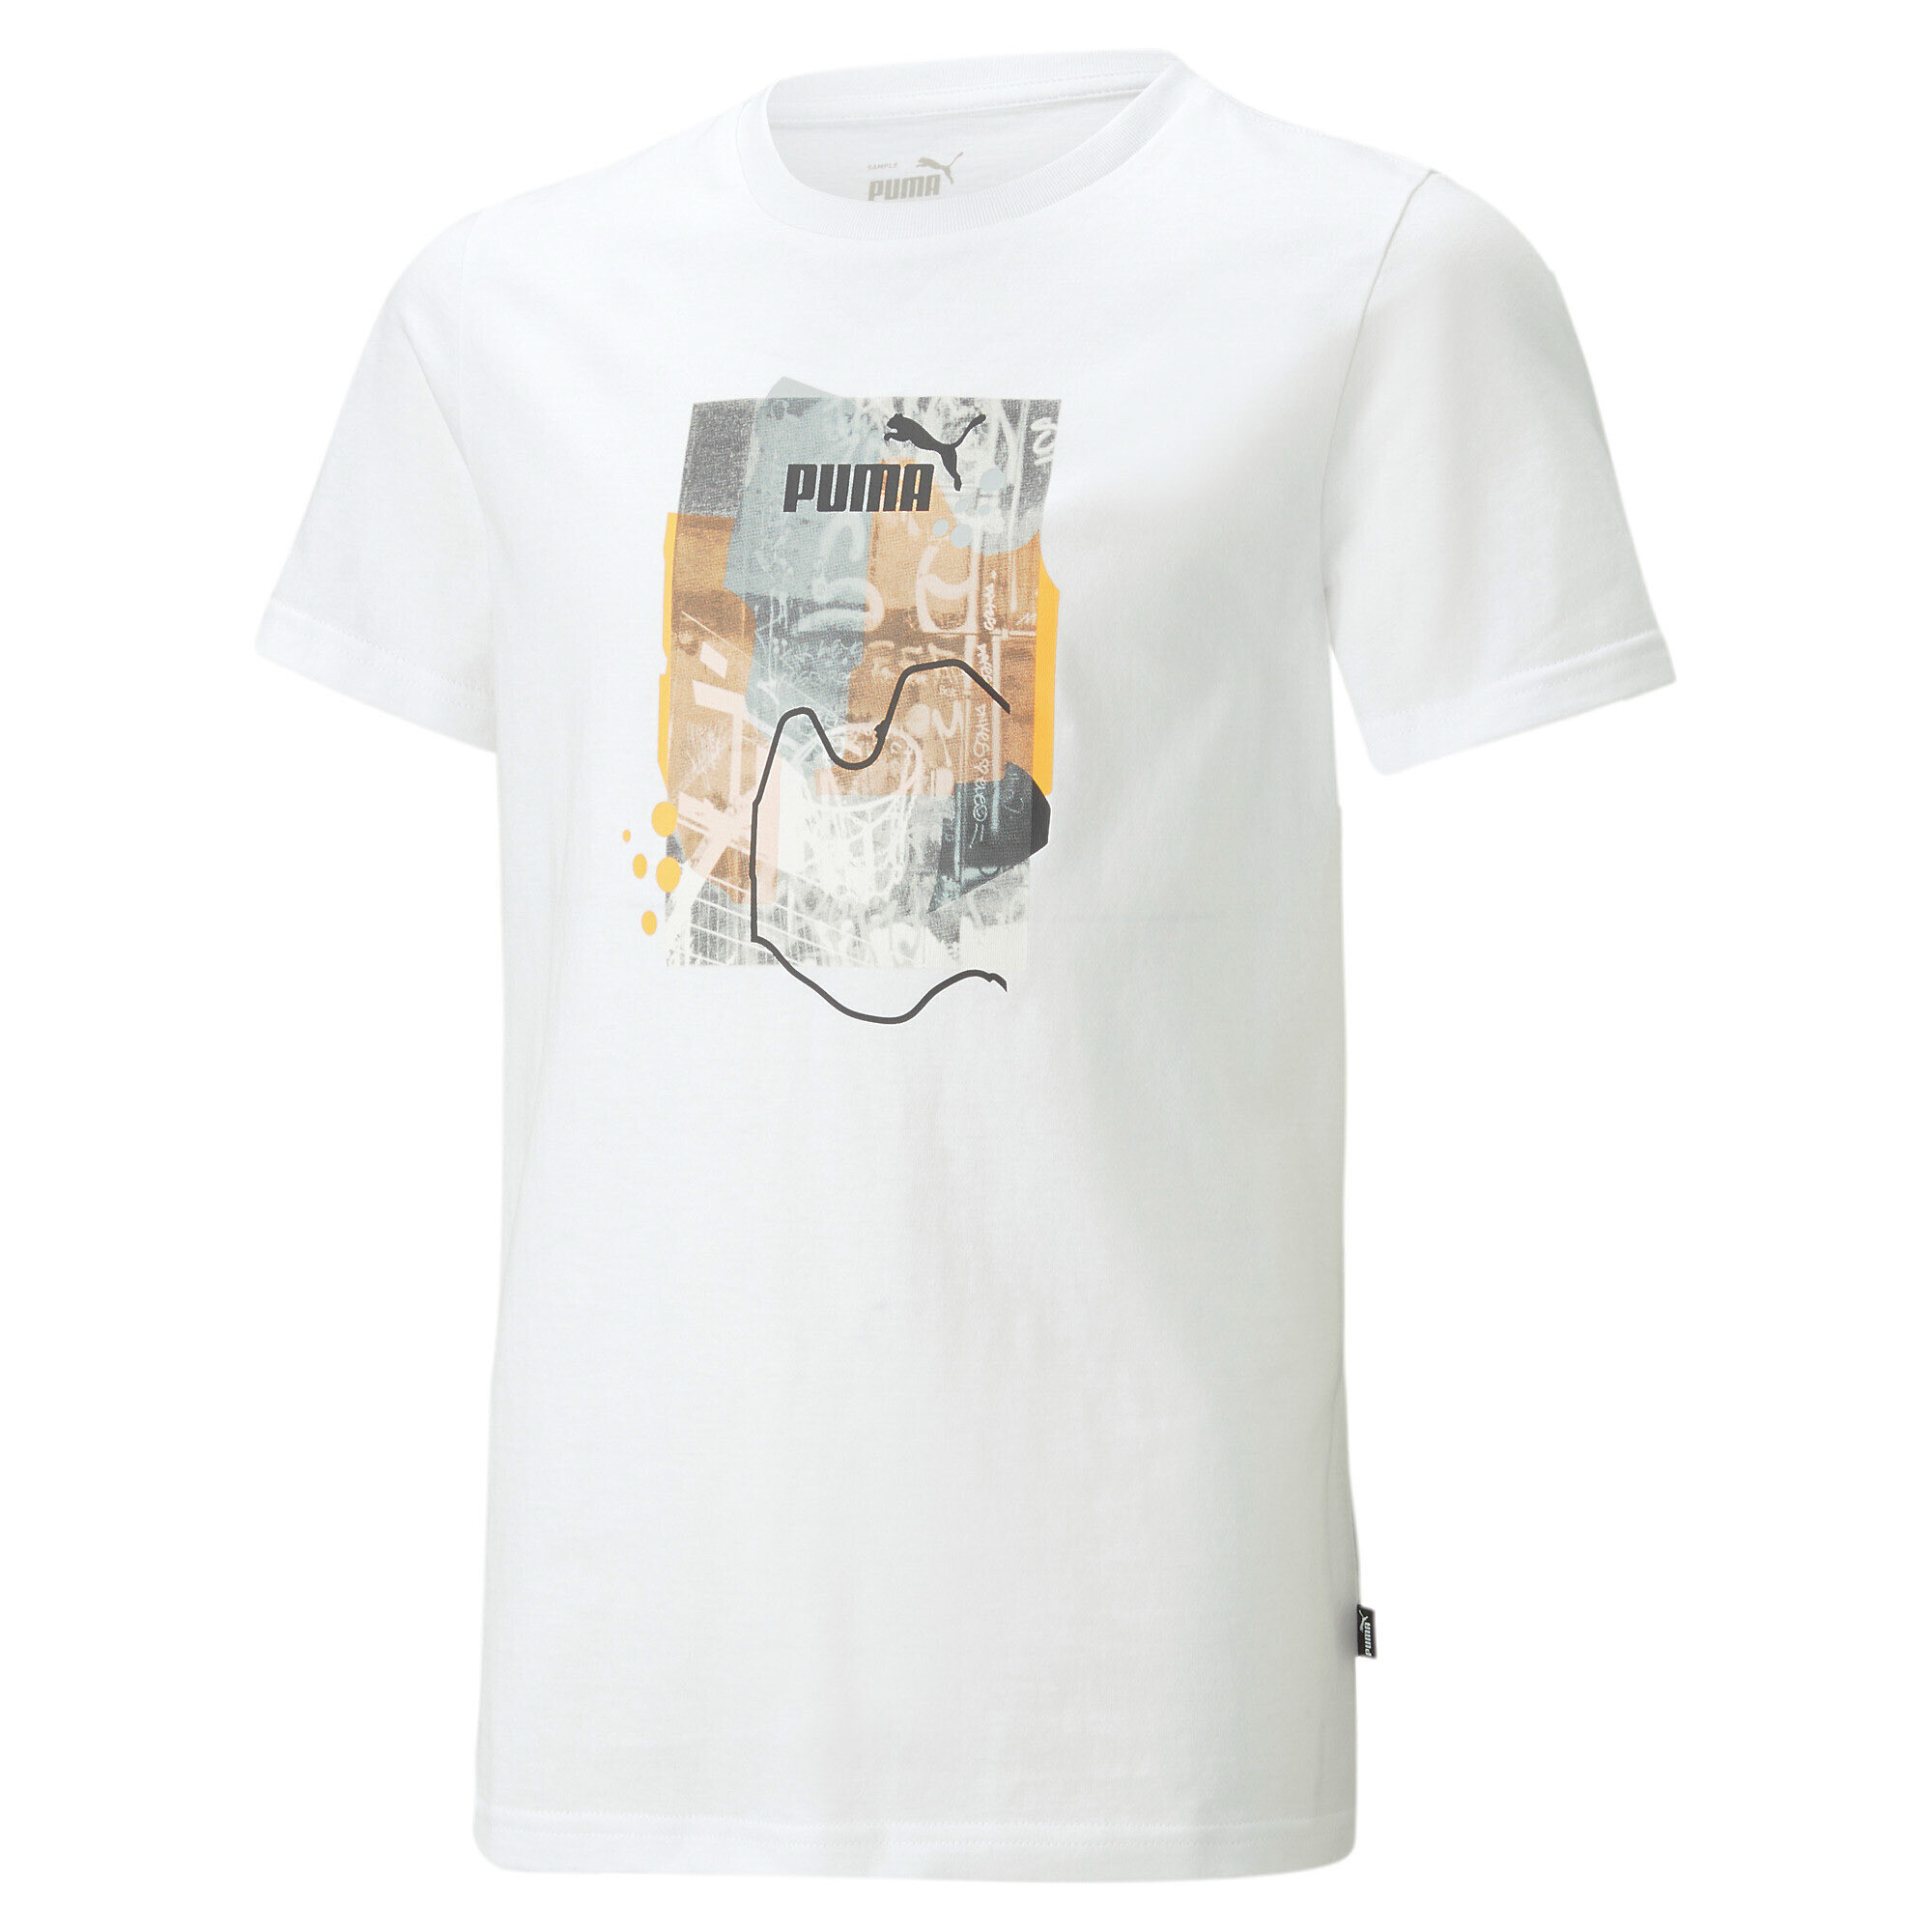 30%OFF！＜プーマ公式通販＞ プーマ キッズ ボーイズ ESS+ ストリートアート グラフィック 半袖 Tシャツ 120-160cm メンズ PUMA White ｜PUMA.com画像